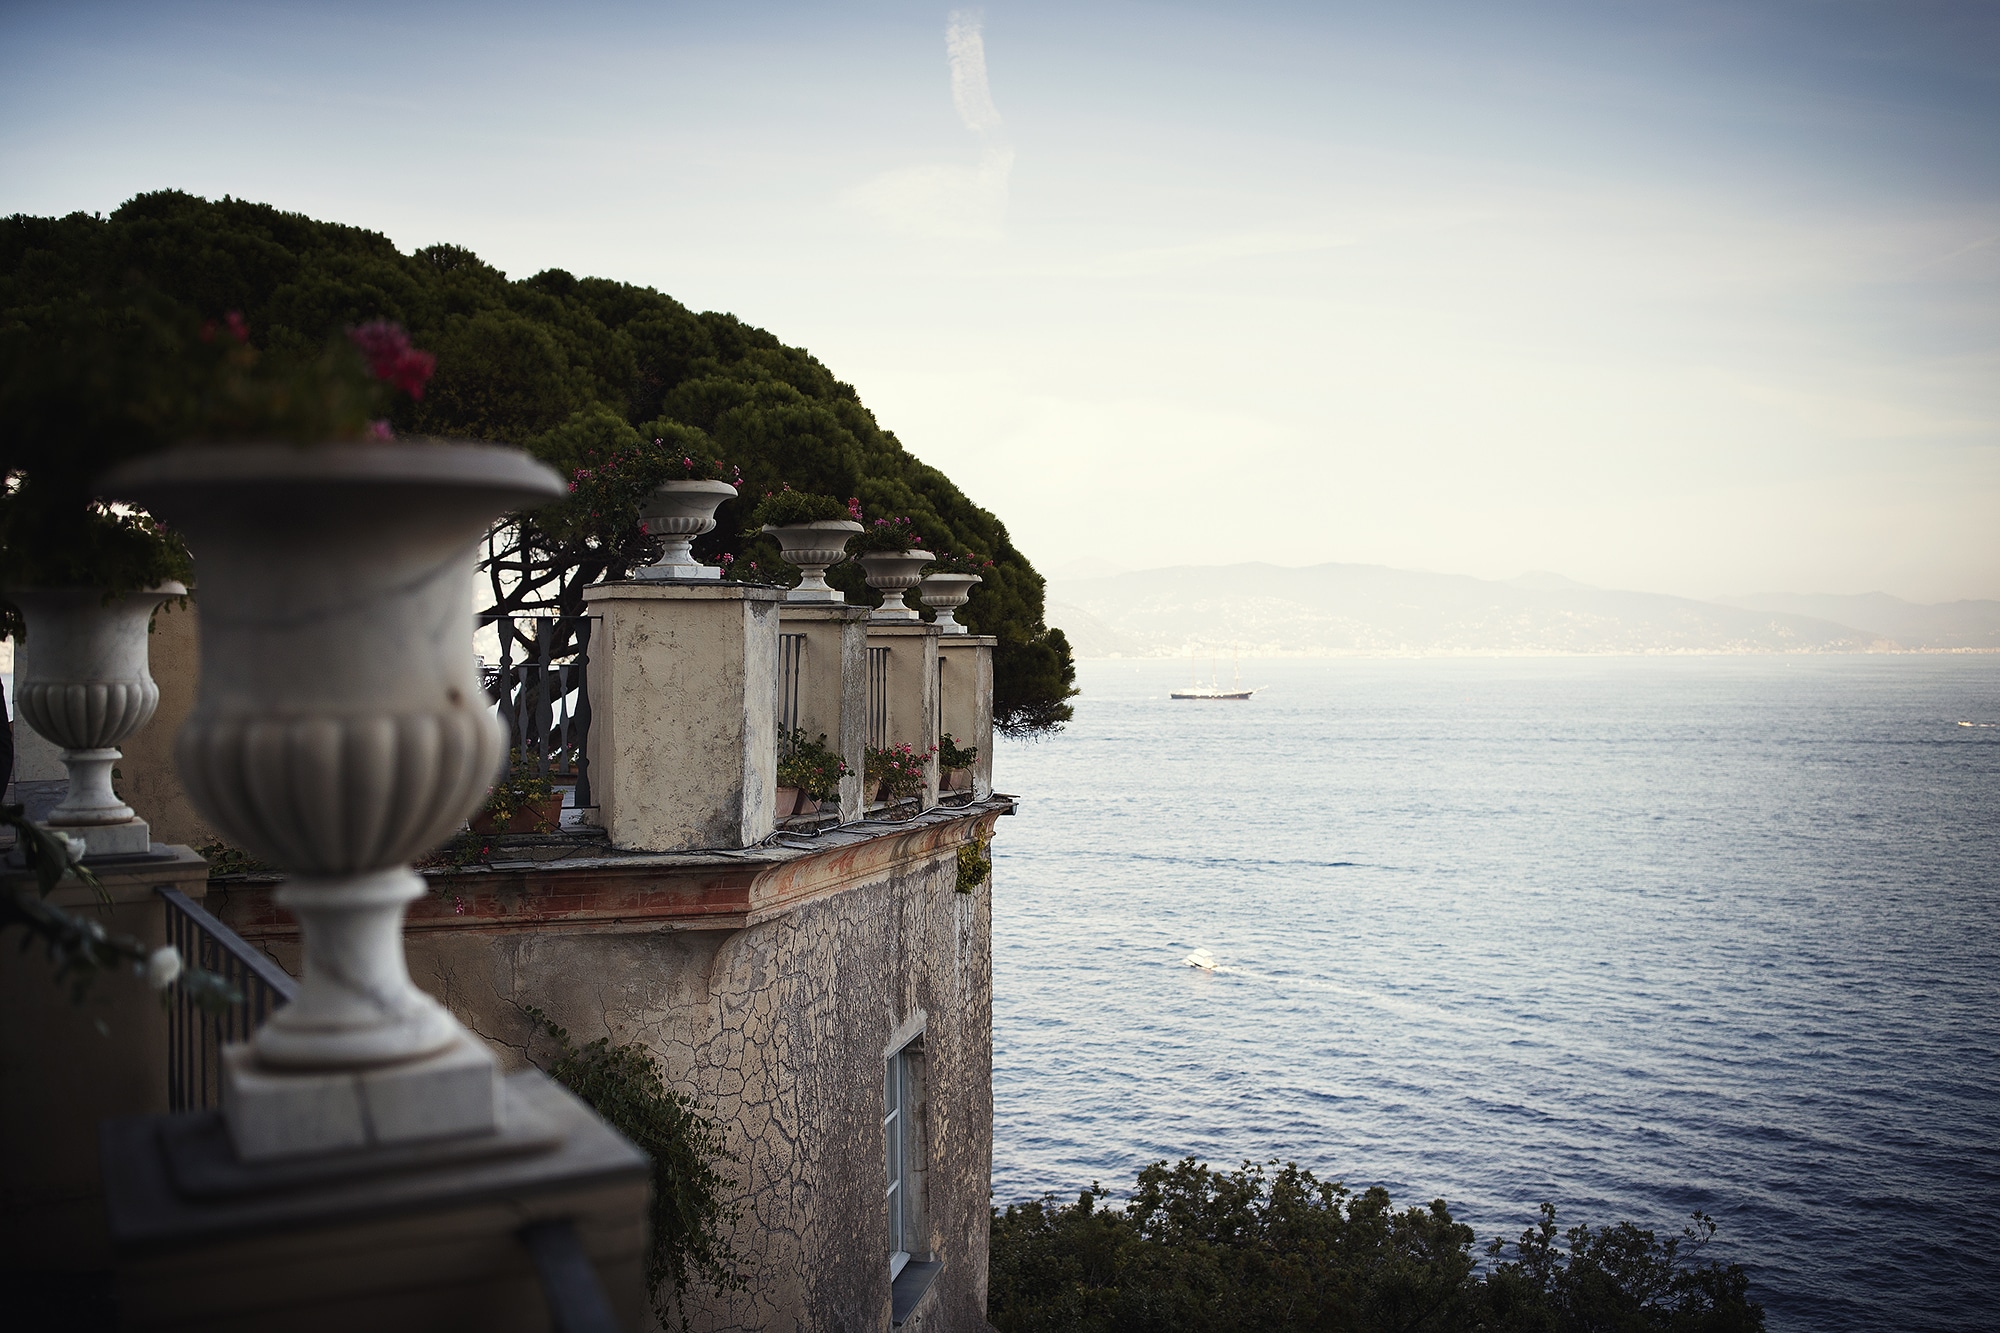 Terrace for a glamour ceremony in Portofino